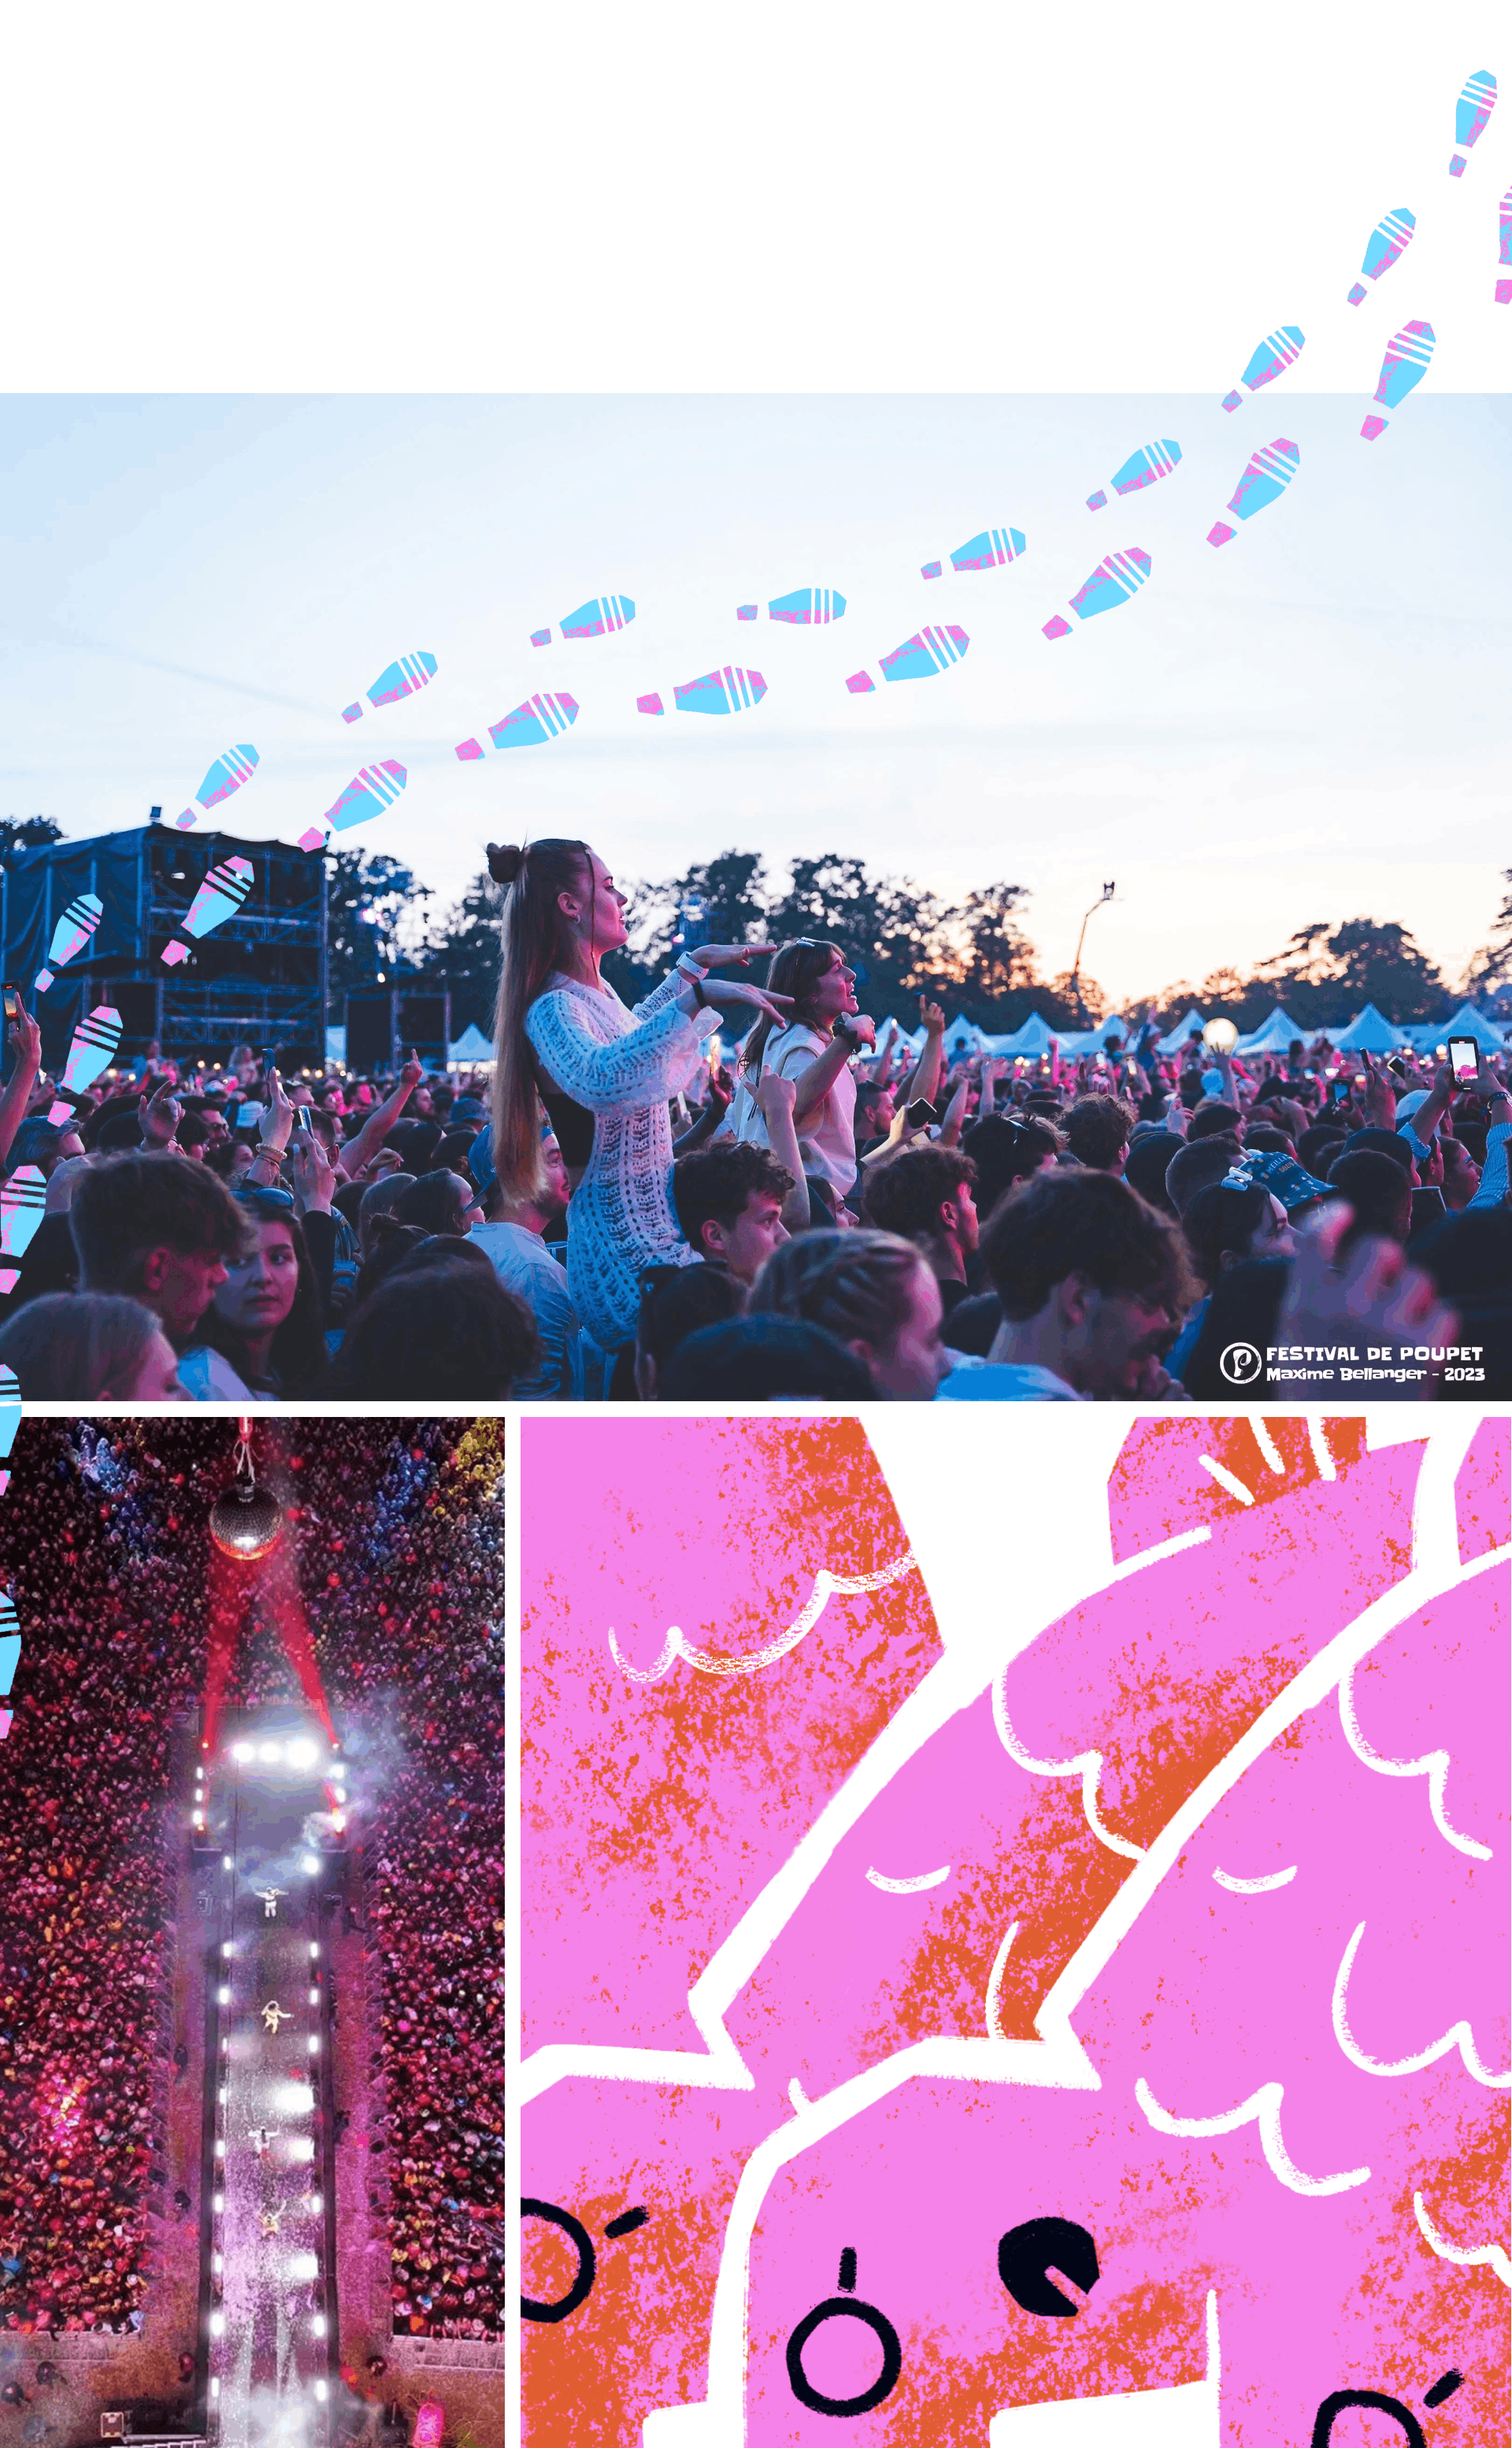 Des photographies du festival de Poupet, montrant les spectateurs, ainsi que la scène, lors d'un concert.